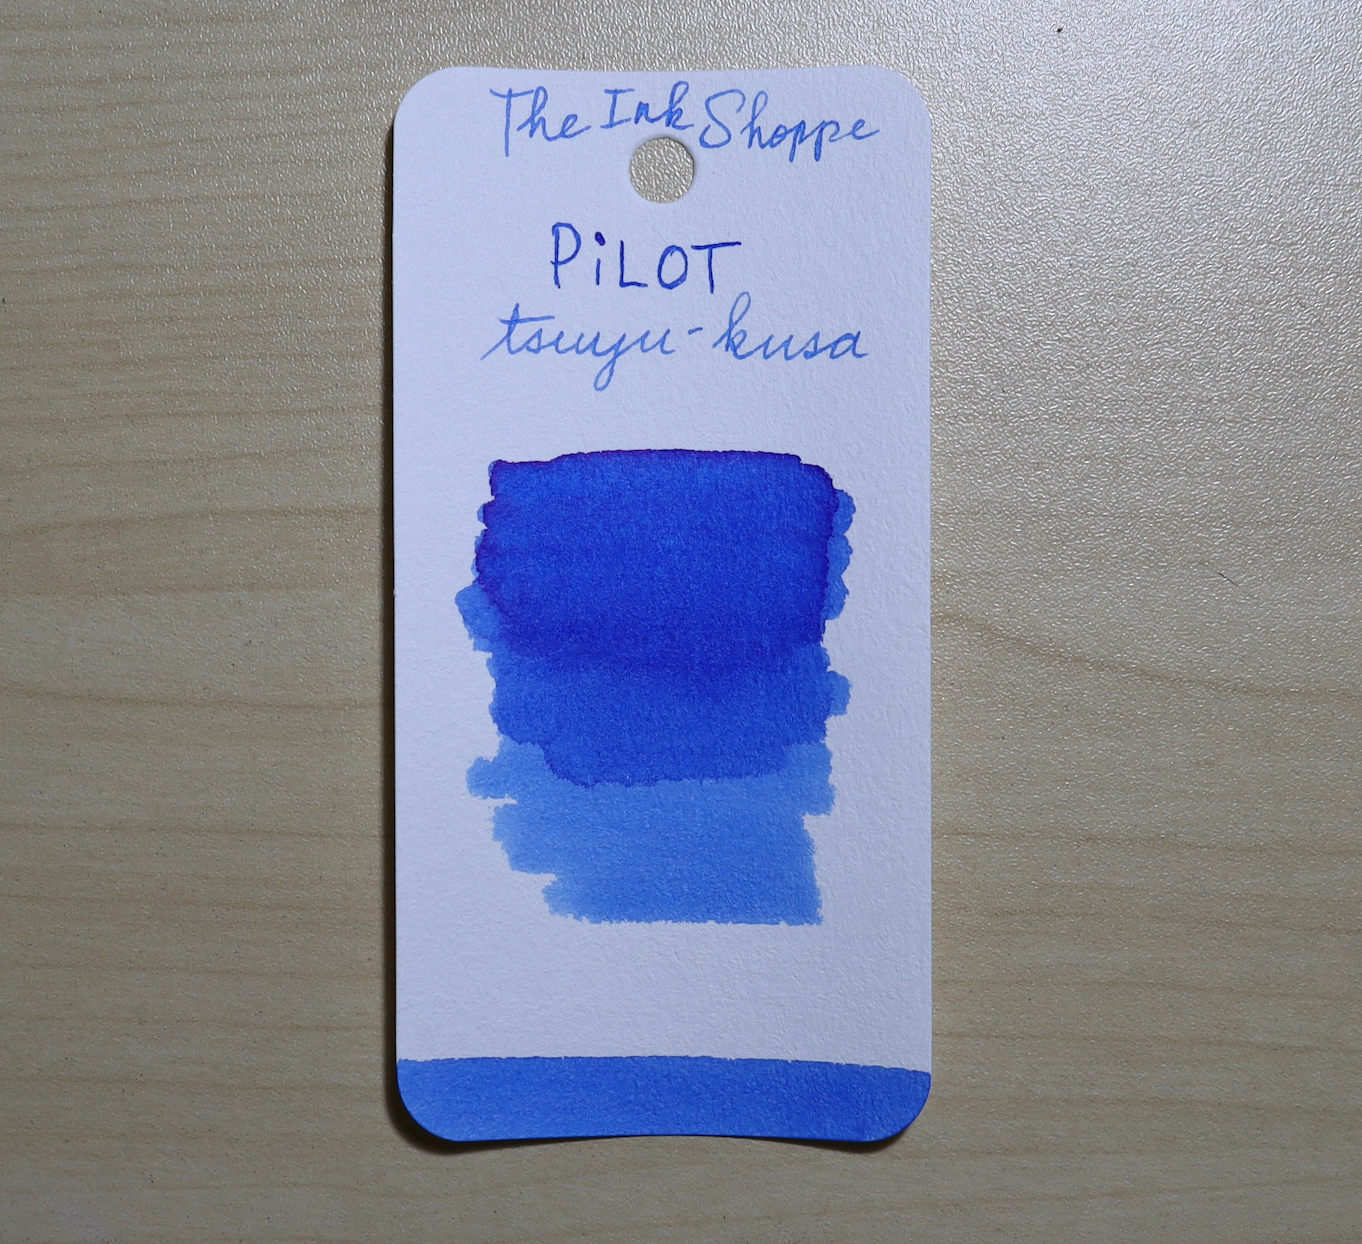 Pilot Iroshizuku Tsutsuji Ink Sample (3ml Vial)